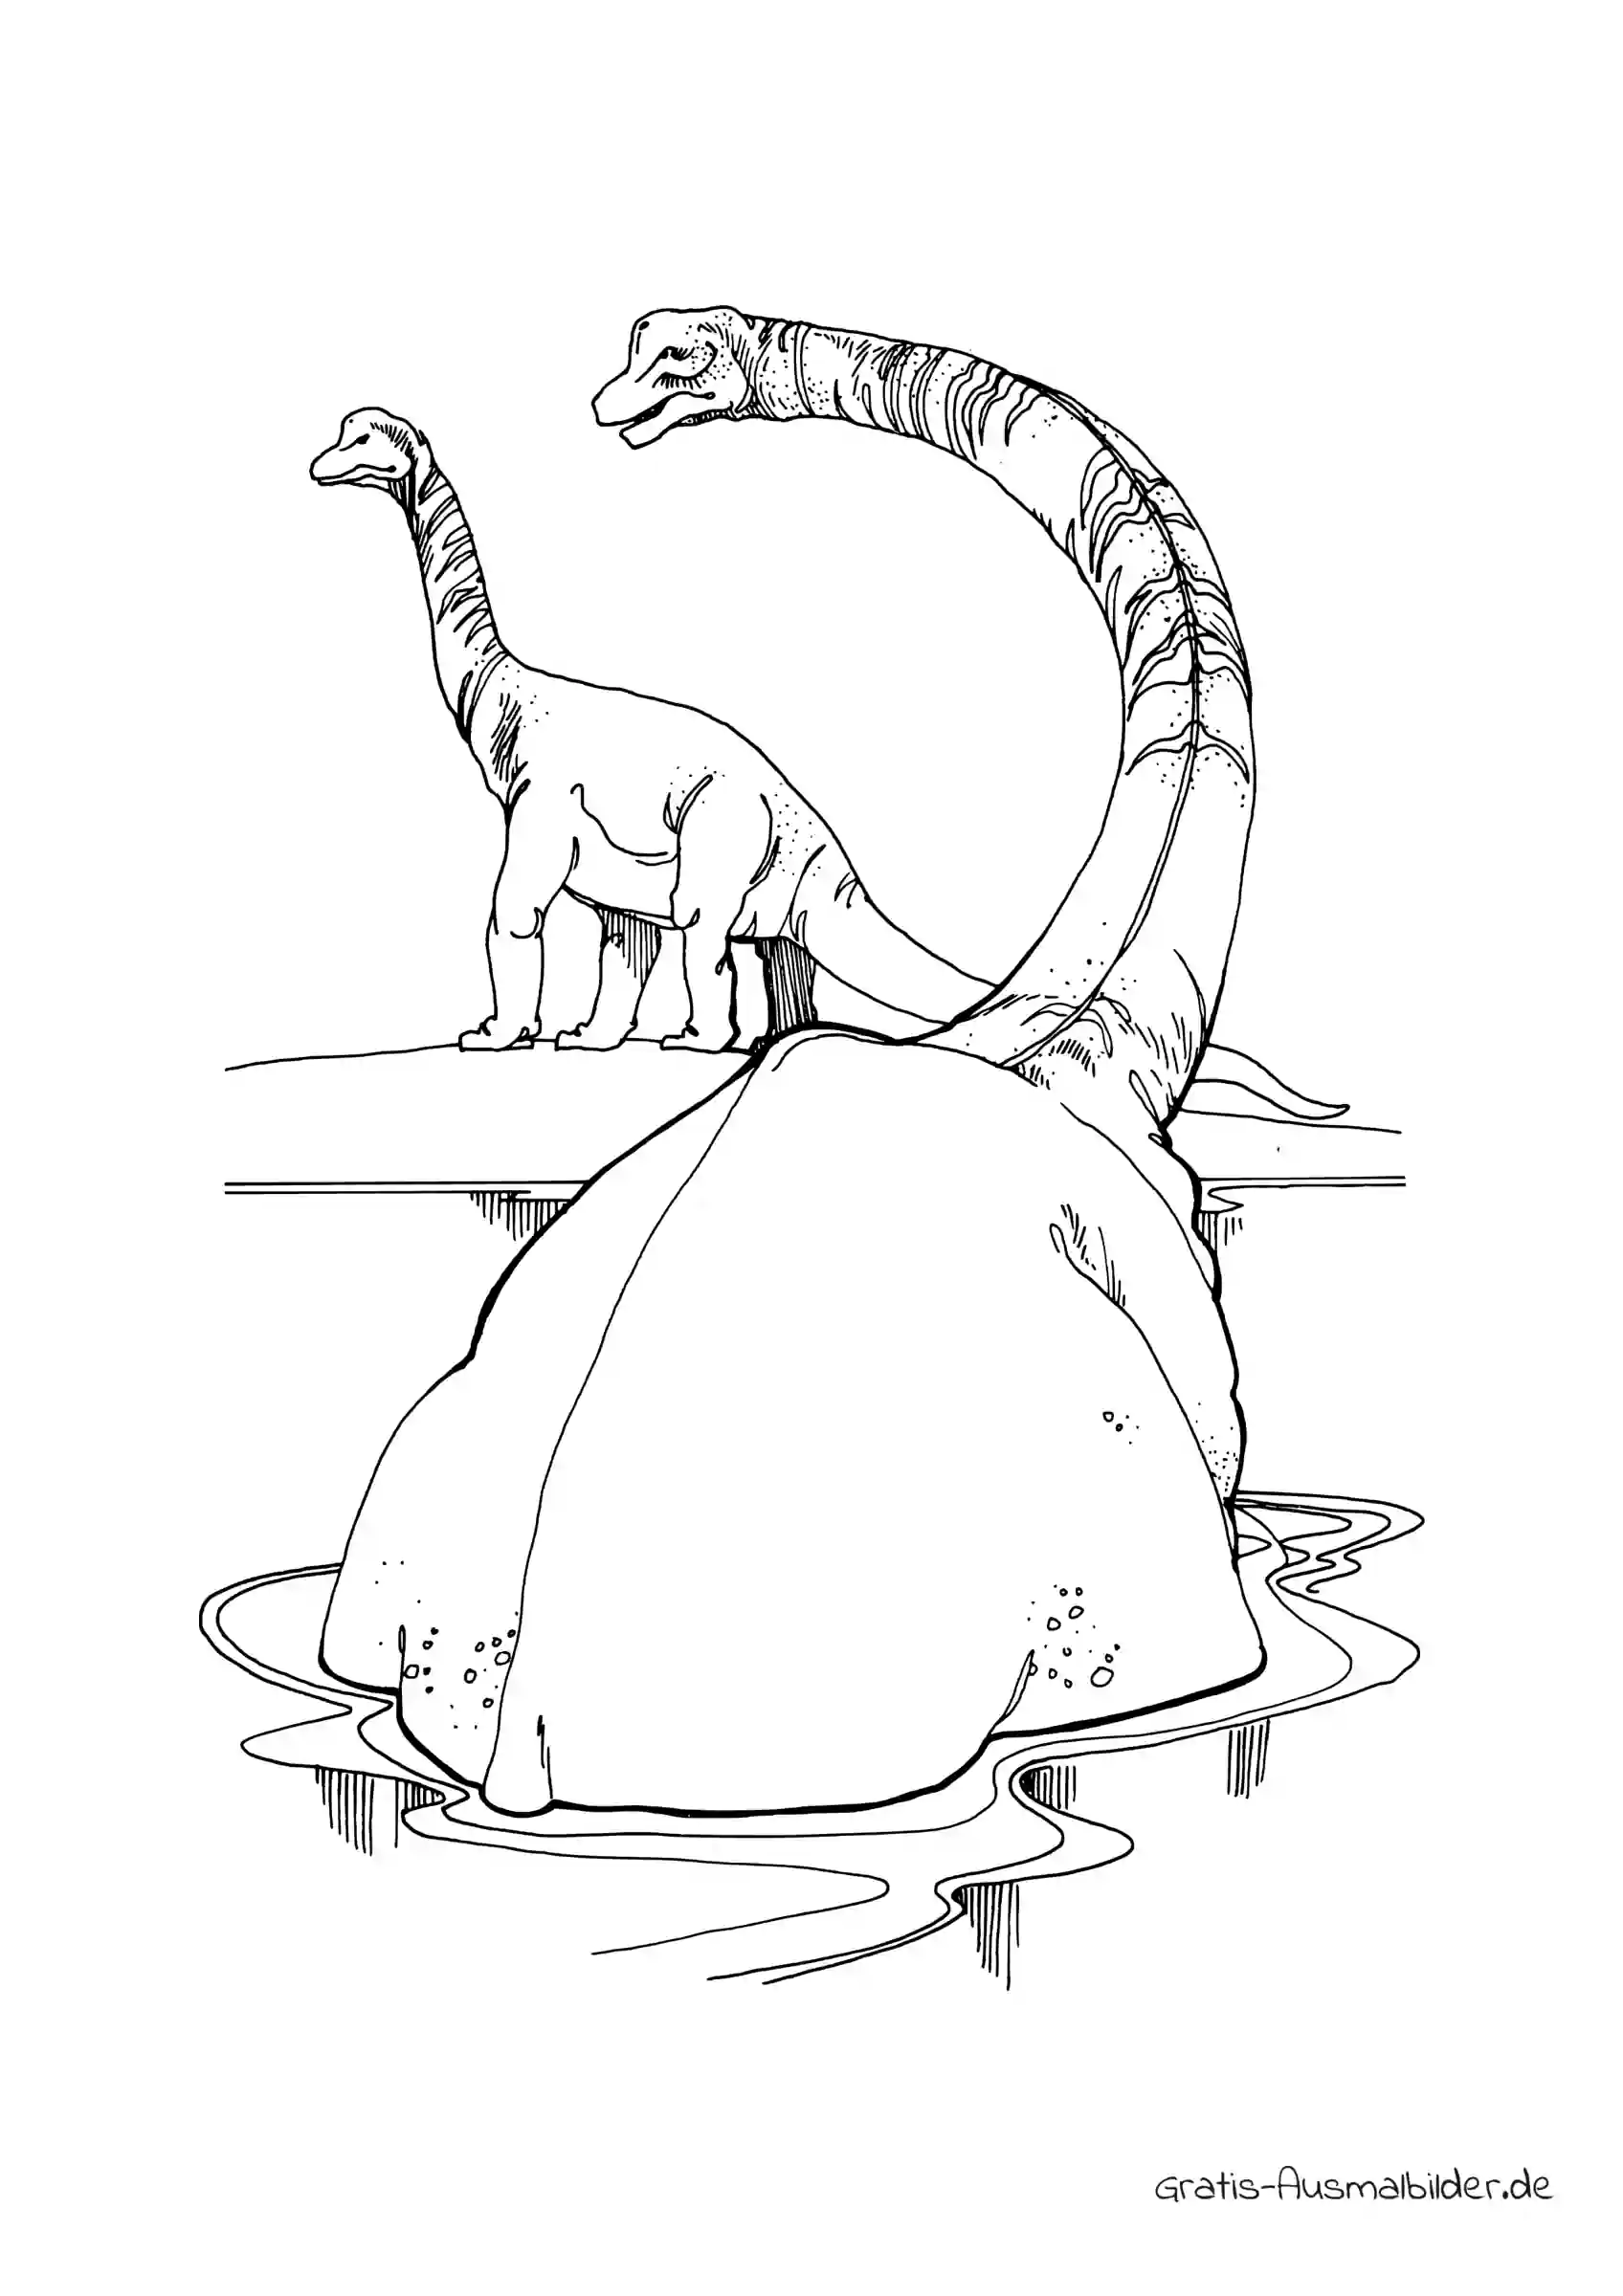 Ausmalbild Dino mit langem Hals im Wasser